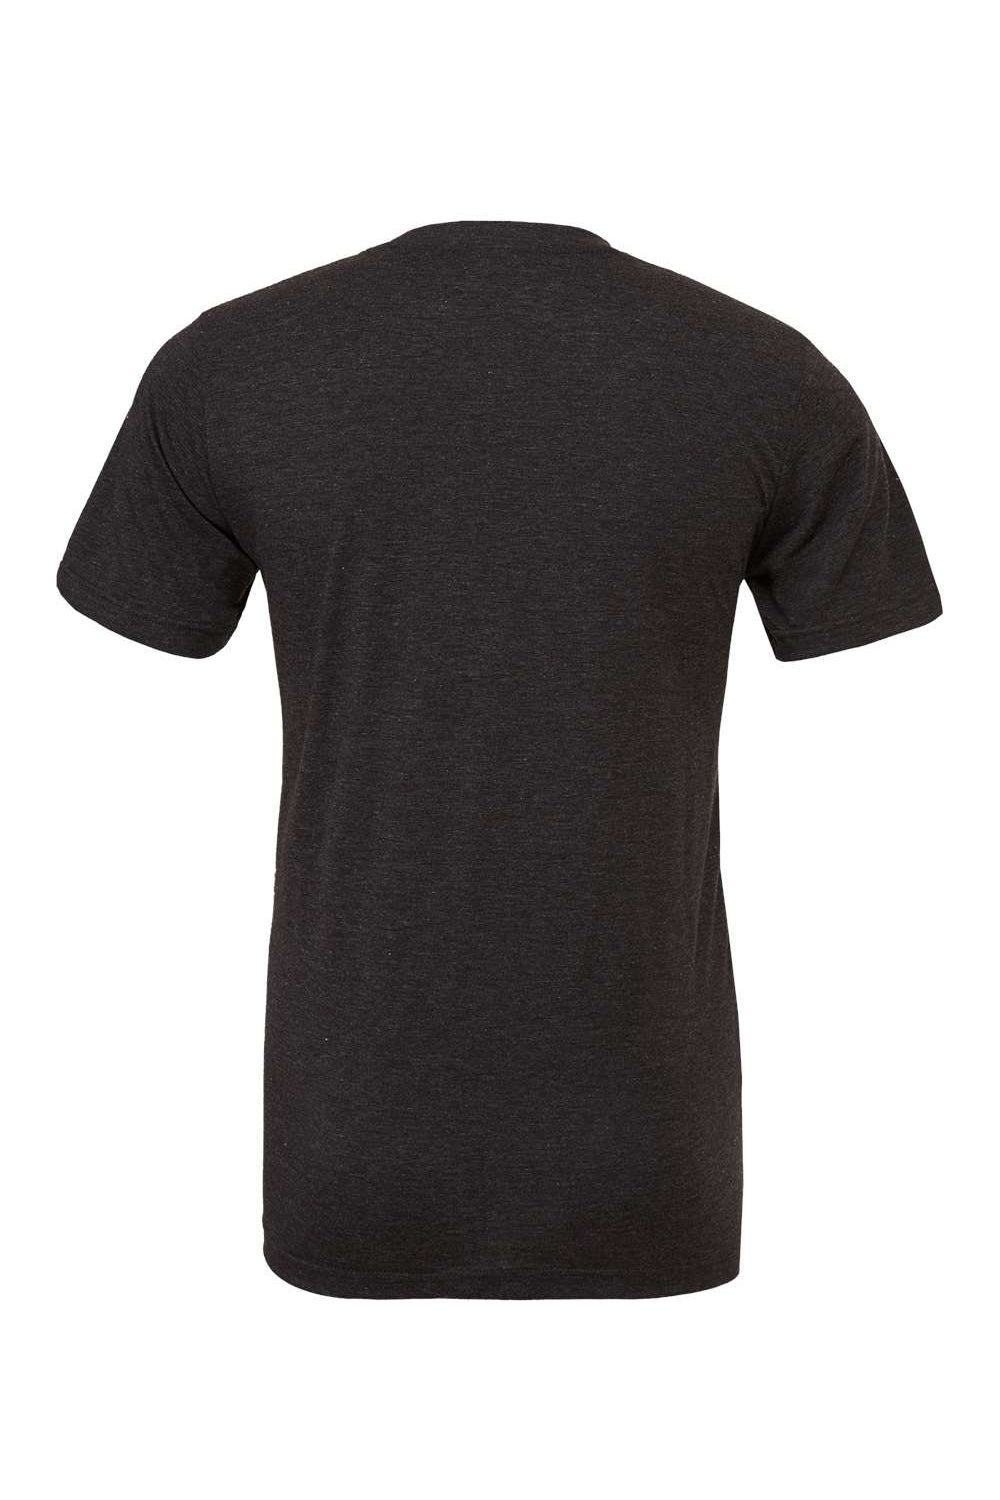 Bella + Canvas BC3413/3413C/3413 Mens Short Sleeve Crewneck T-Shirt Charcoal Black Flat Back